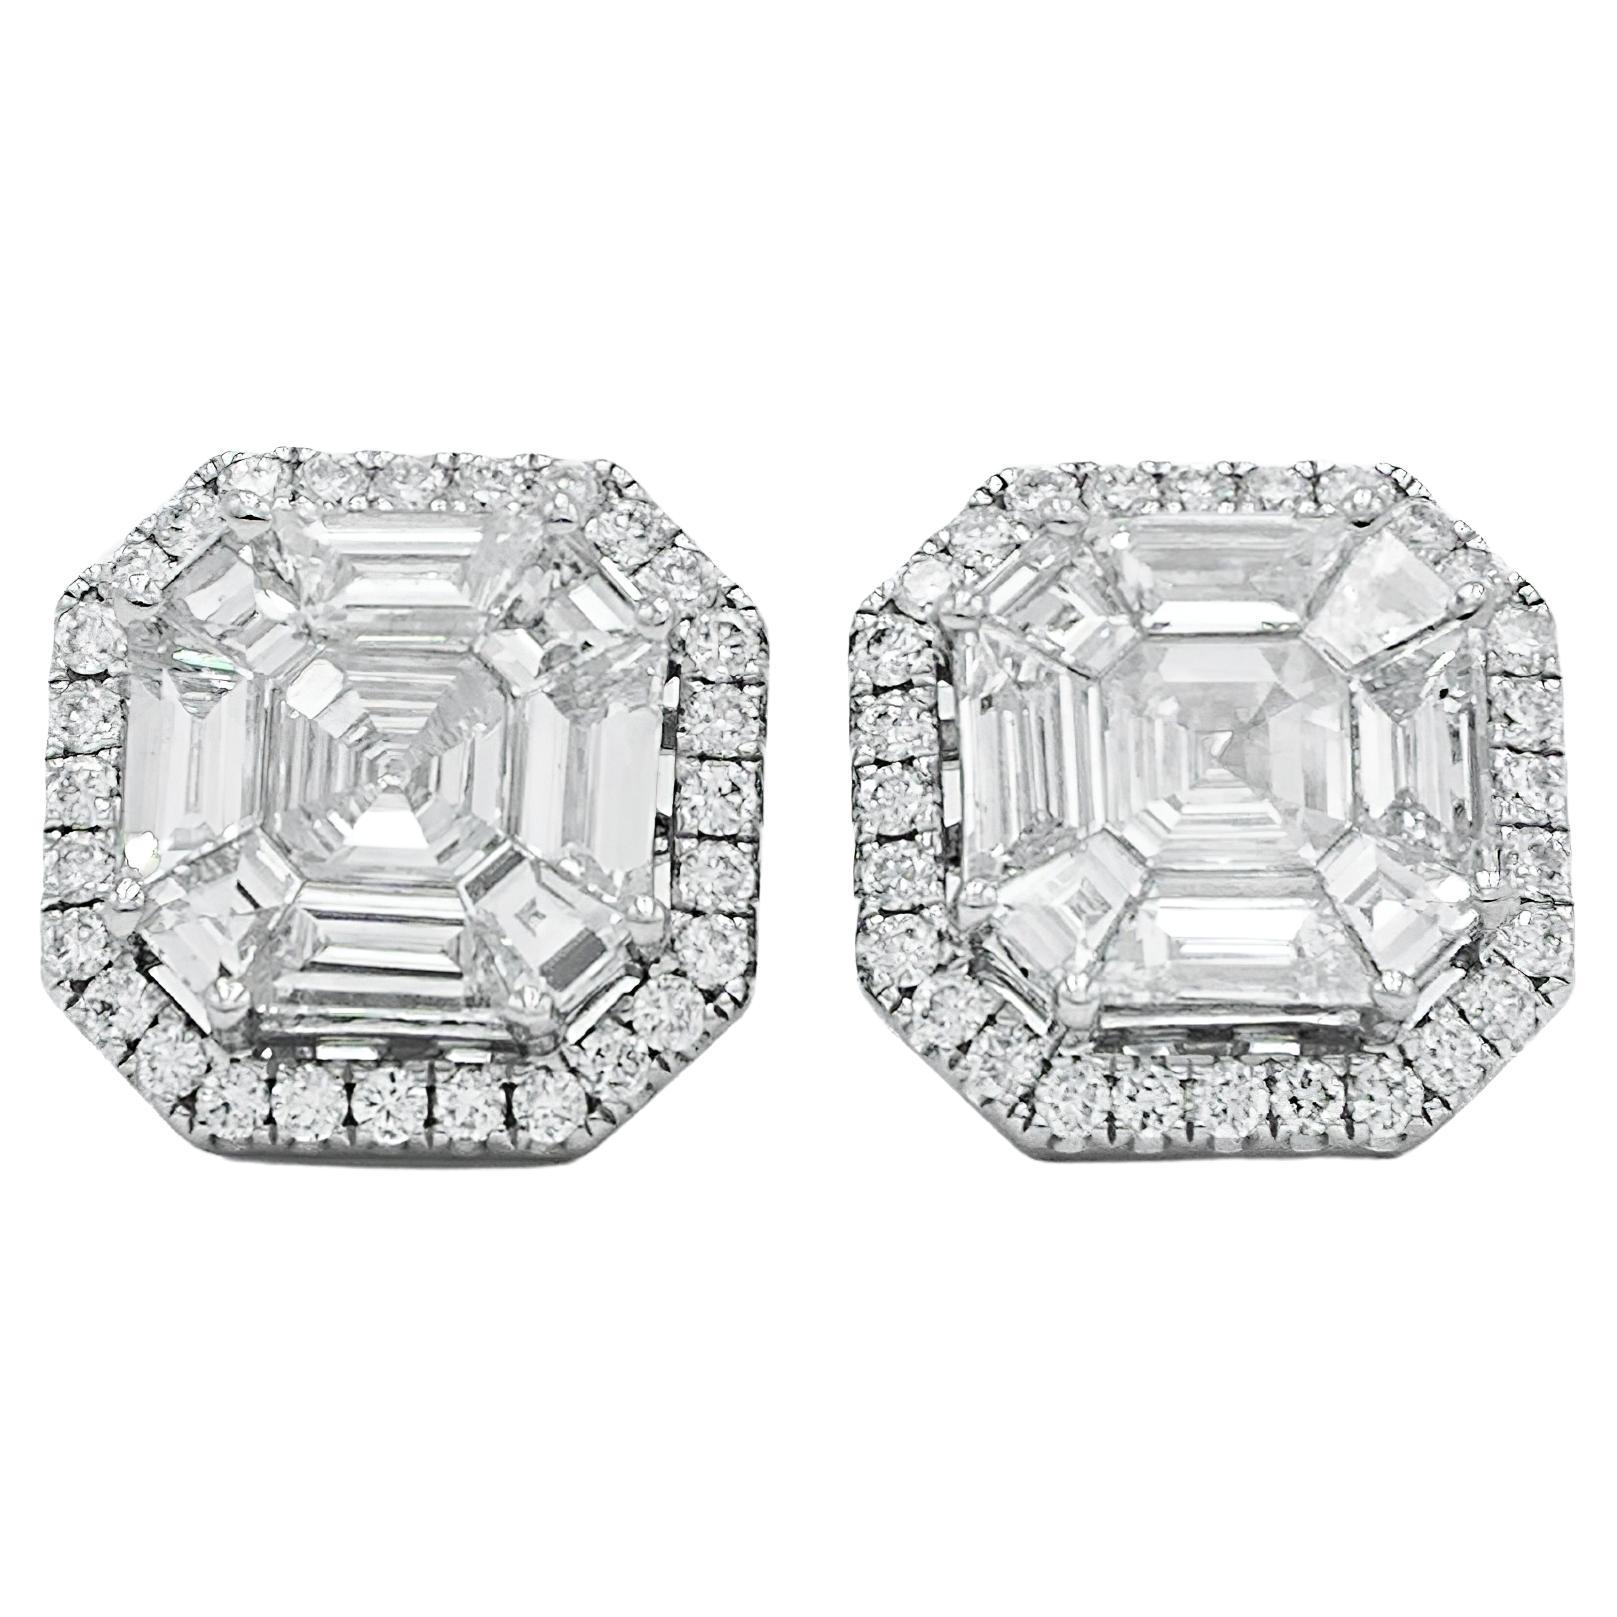 Pie-Cut Asscher Diamond Prong Set Halo Earring